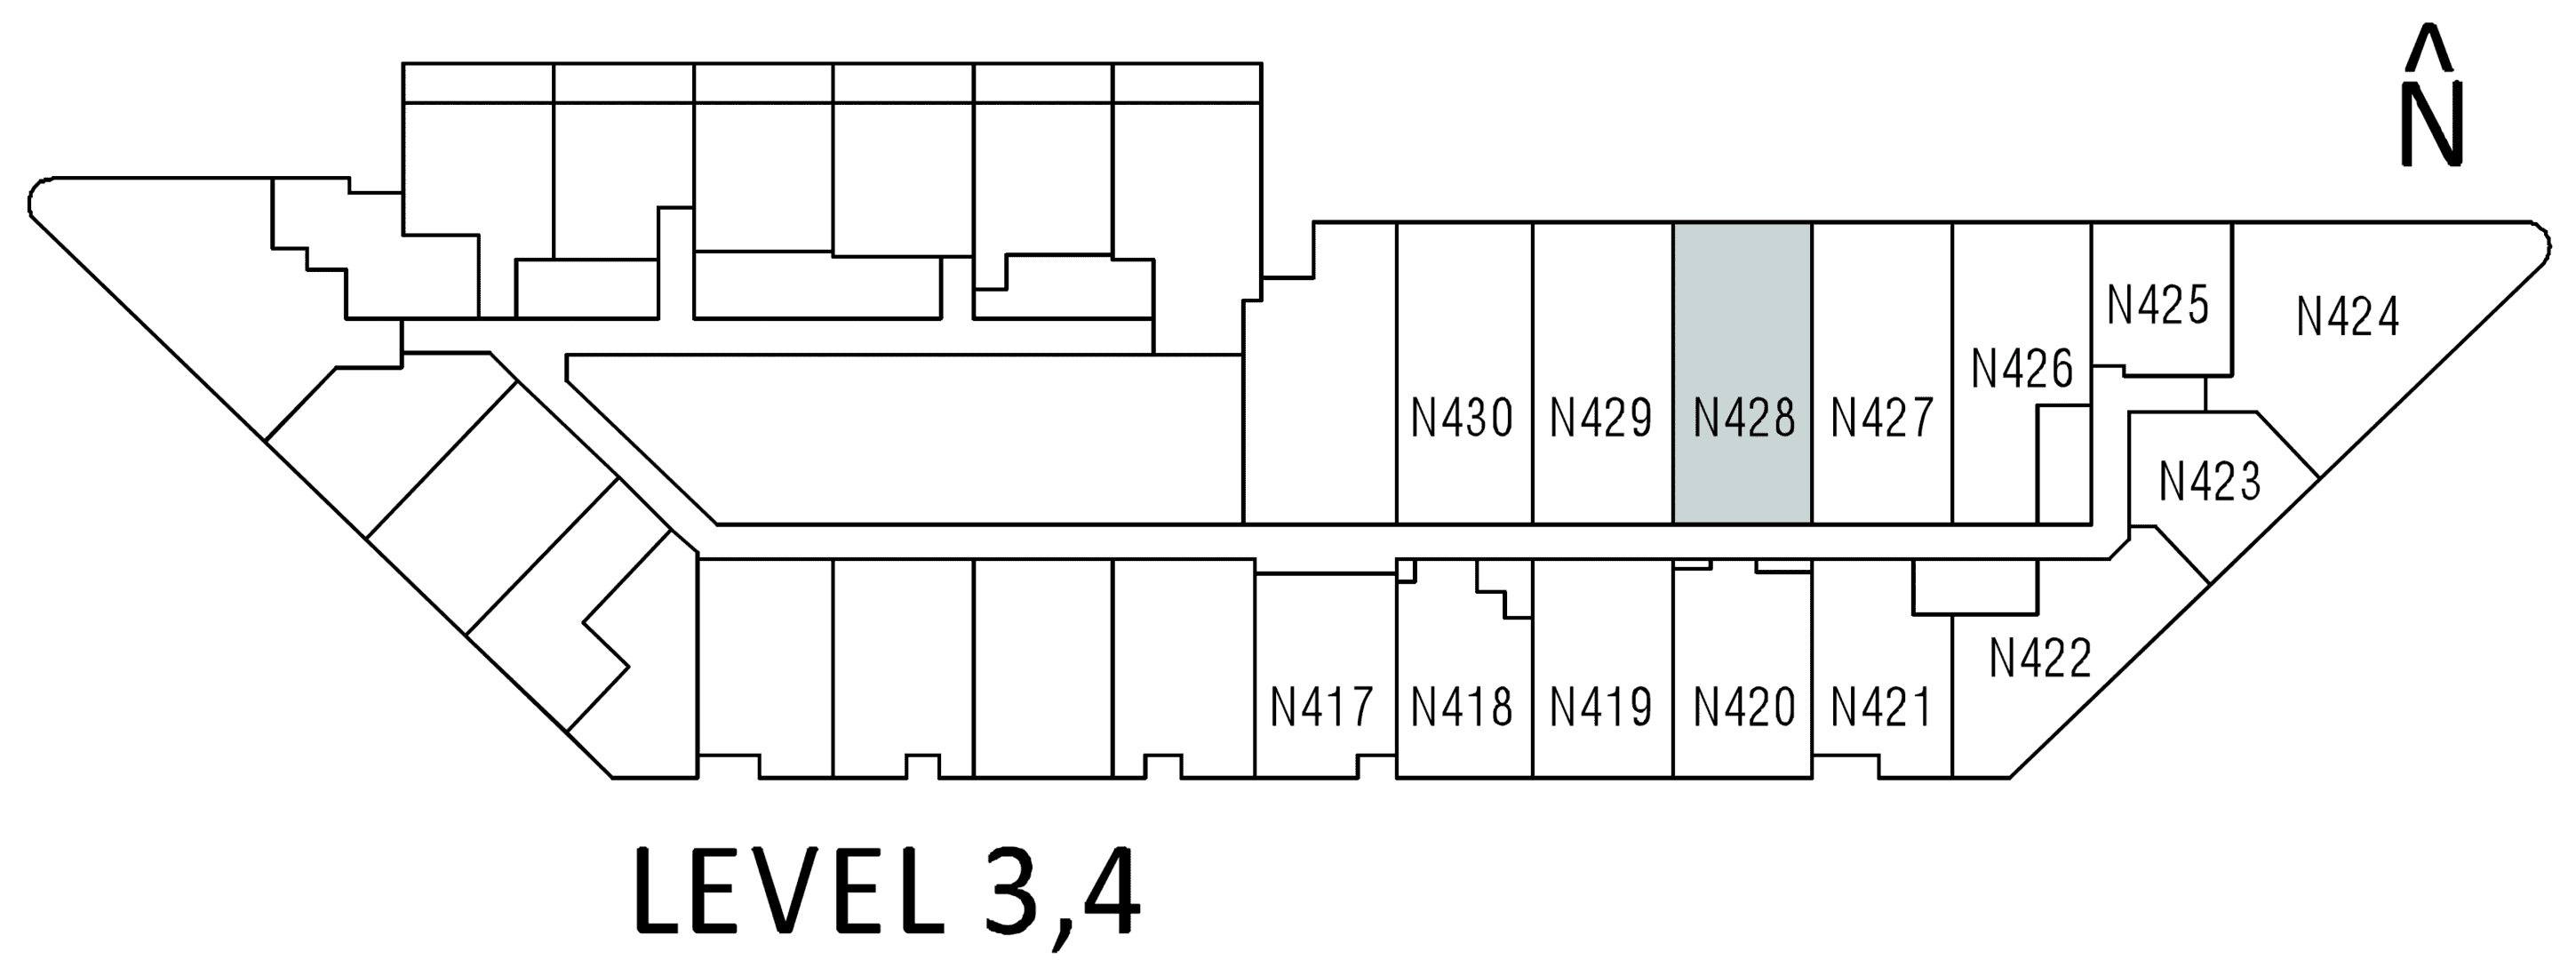 N307 floor plan